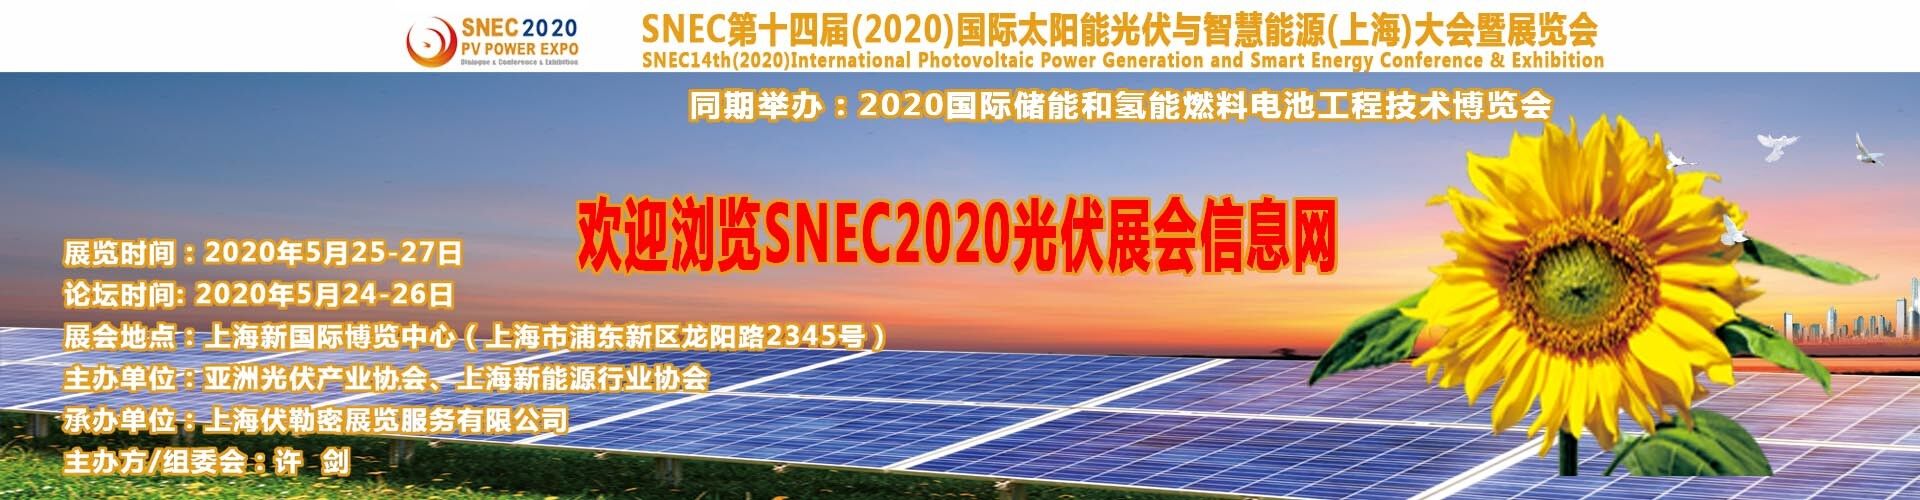 SNEC2018龍陽路光伏展